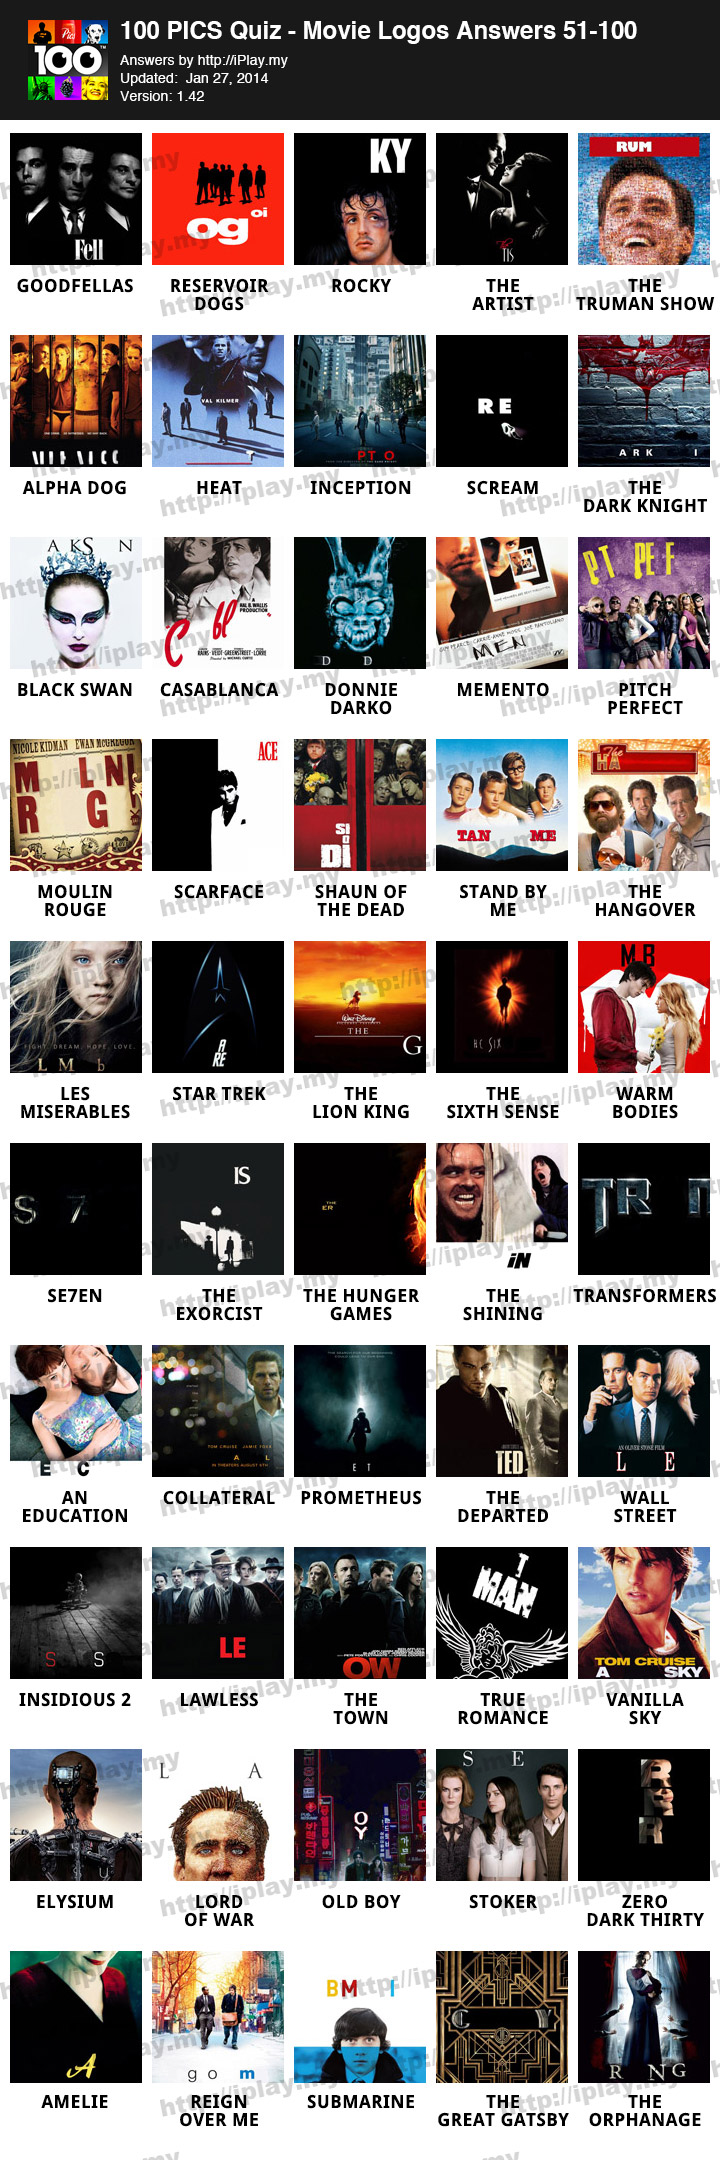 100 Pics Movie Logos Answers | iPlay.my